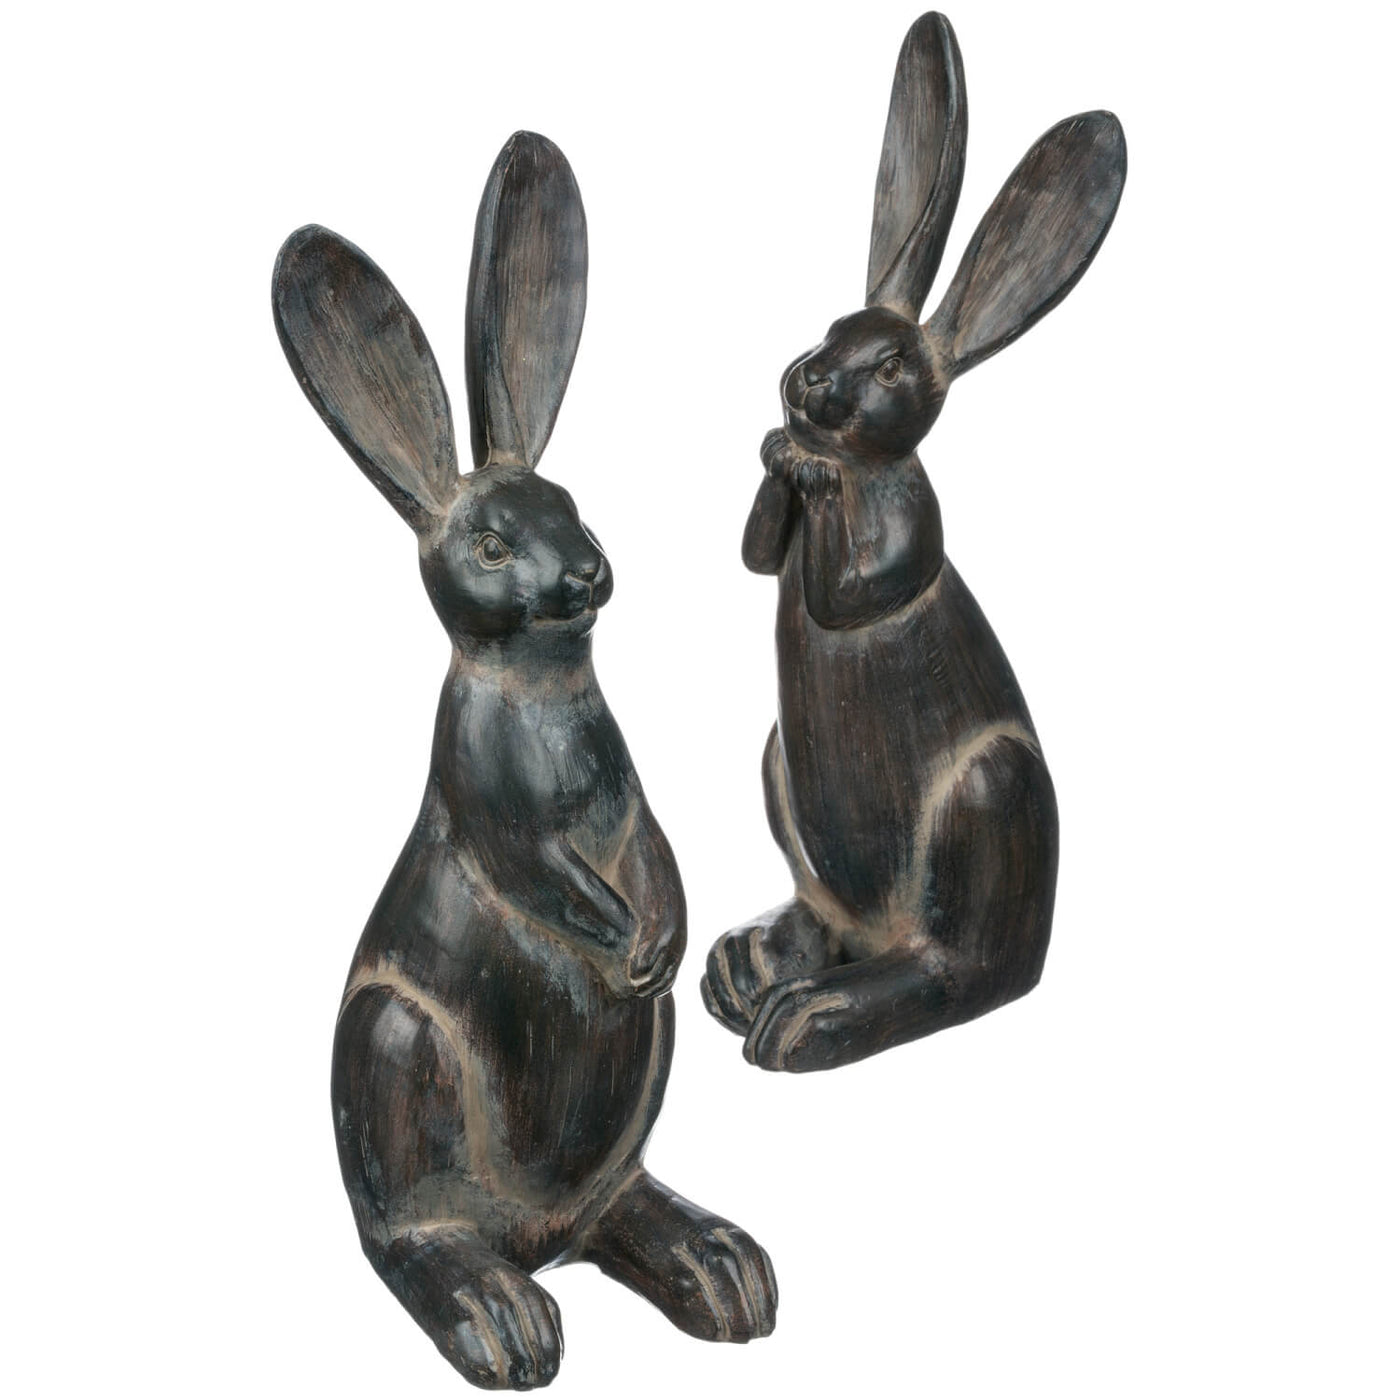 Pair of resin rabbit statues